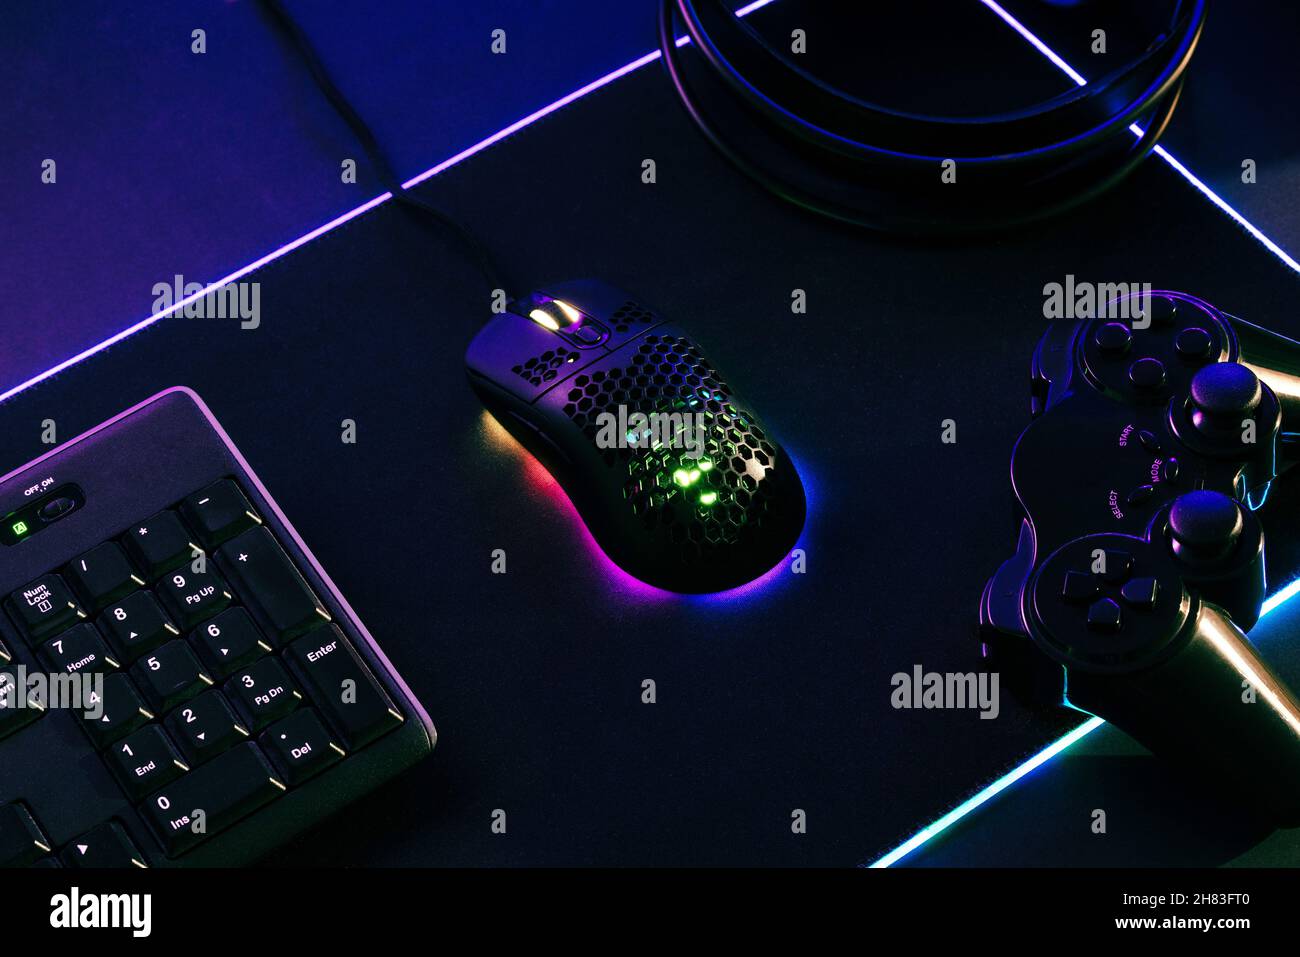 Composición de juegos con ratón, teclado, jopad y auriculares en la alfombrilla LED para juegos Foto de stock